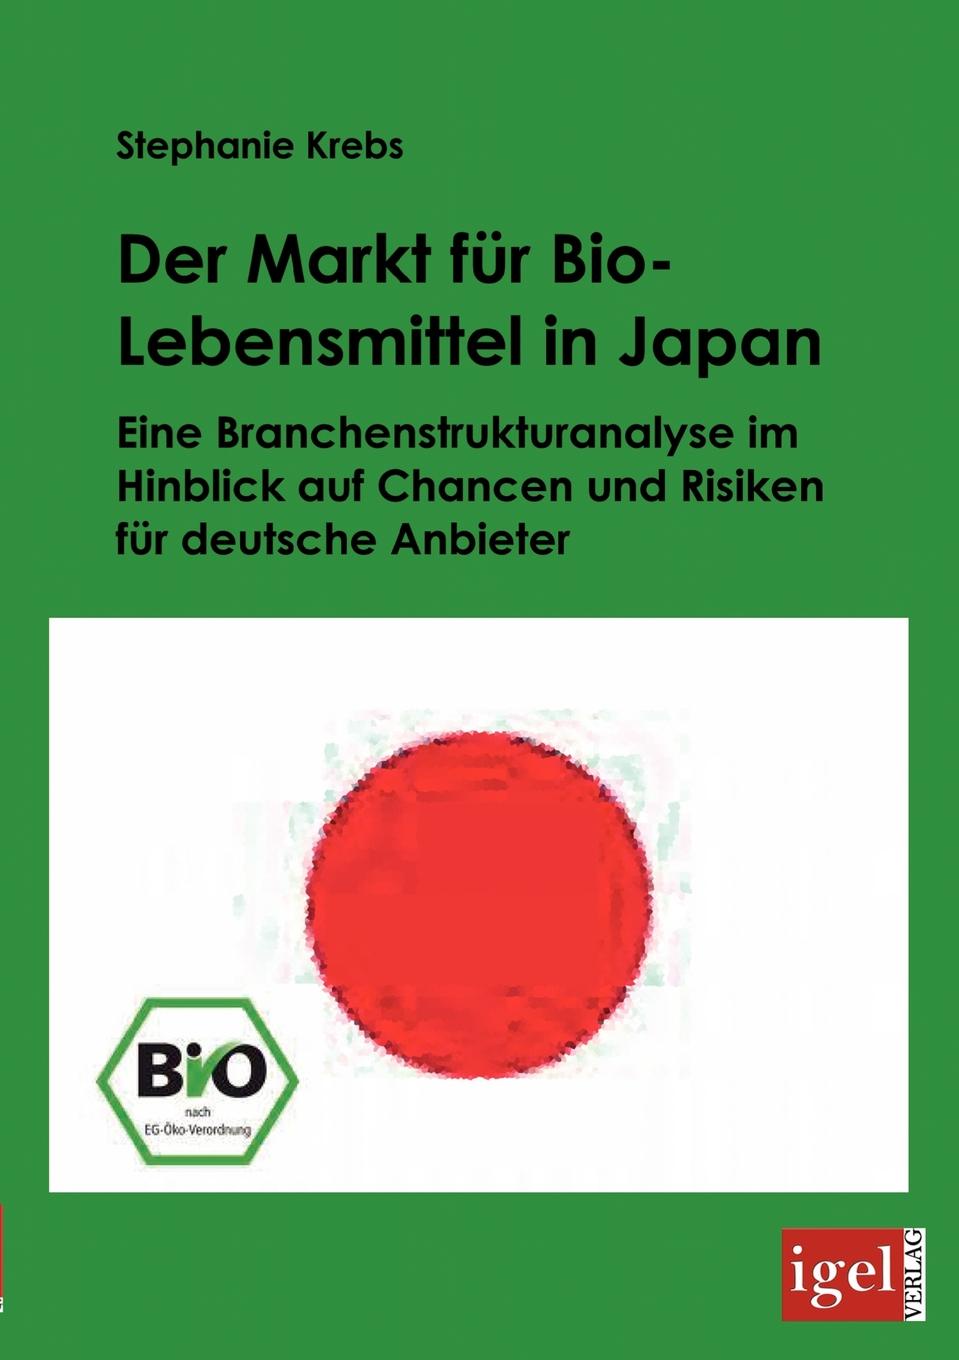 Der Markt fur Bio-Lebensmittel in Japan